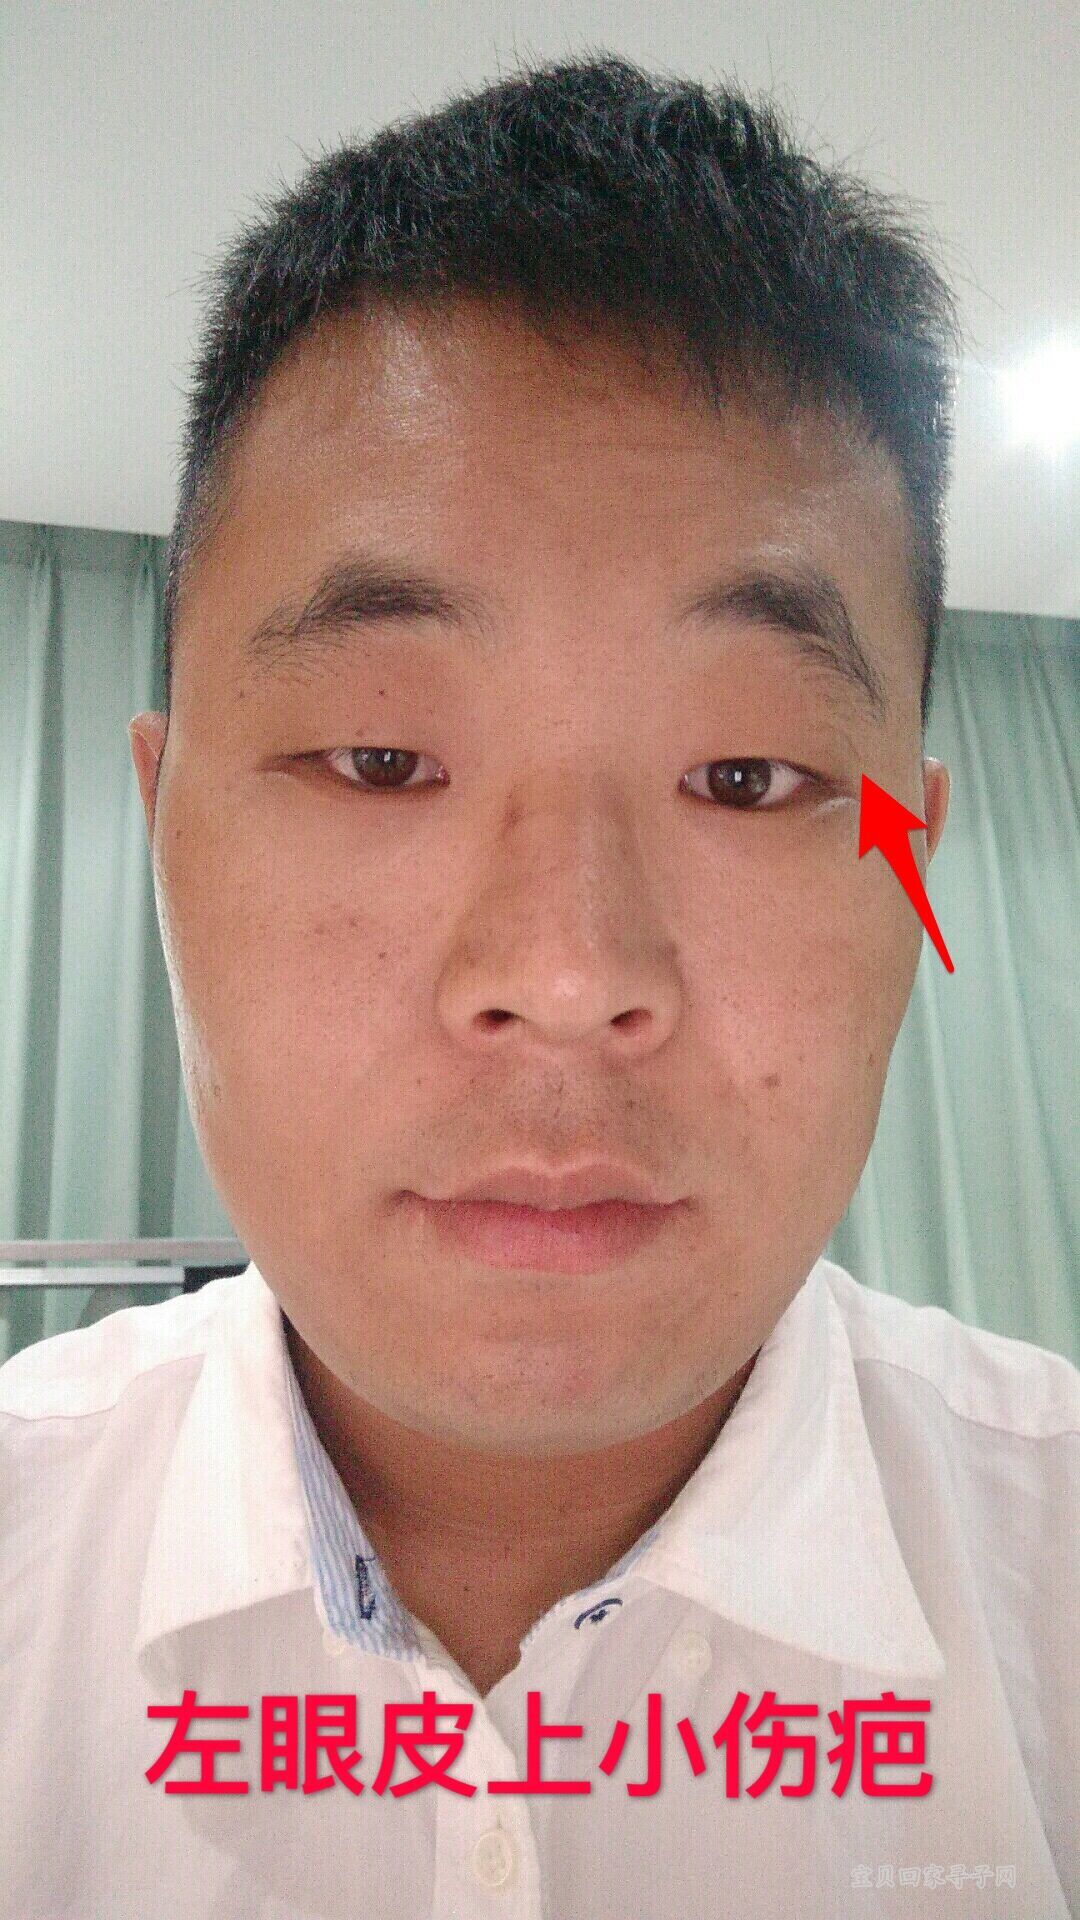 左眼皮上的小伤疤.jpg